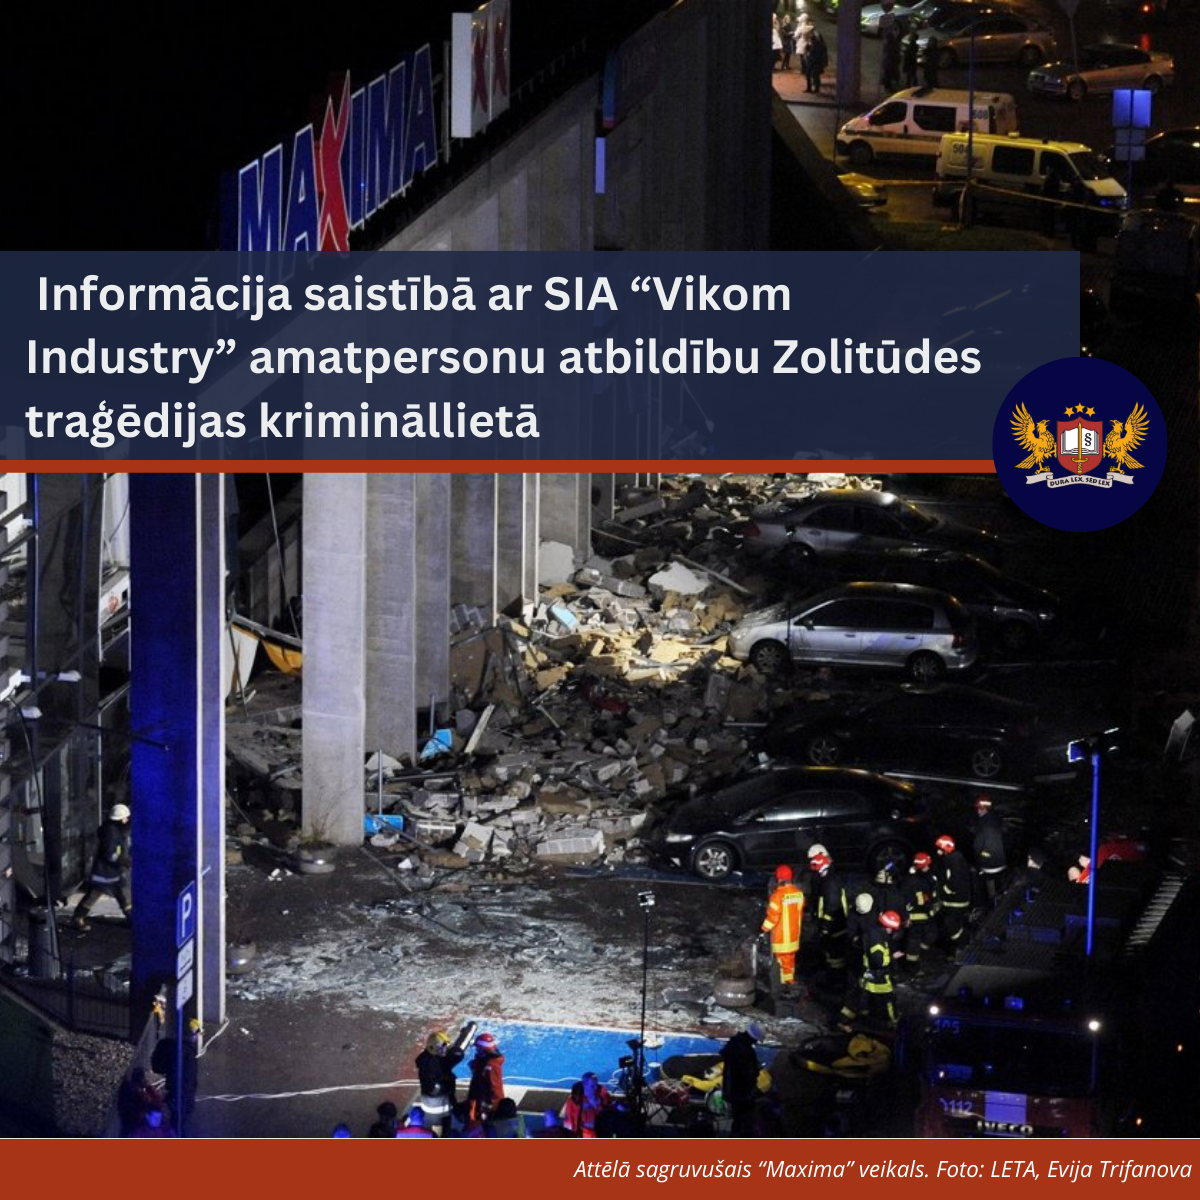 Informācija saistībā ar SIA “Vikom Industry” amatpersonu atbildību Zolitūdes traģēdijas krimināllietā